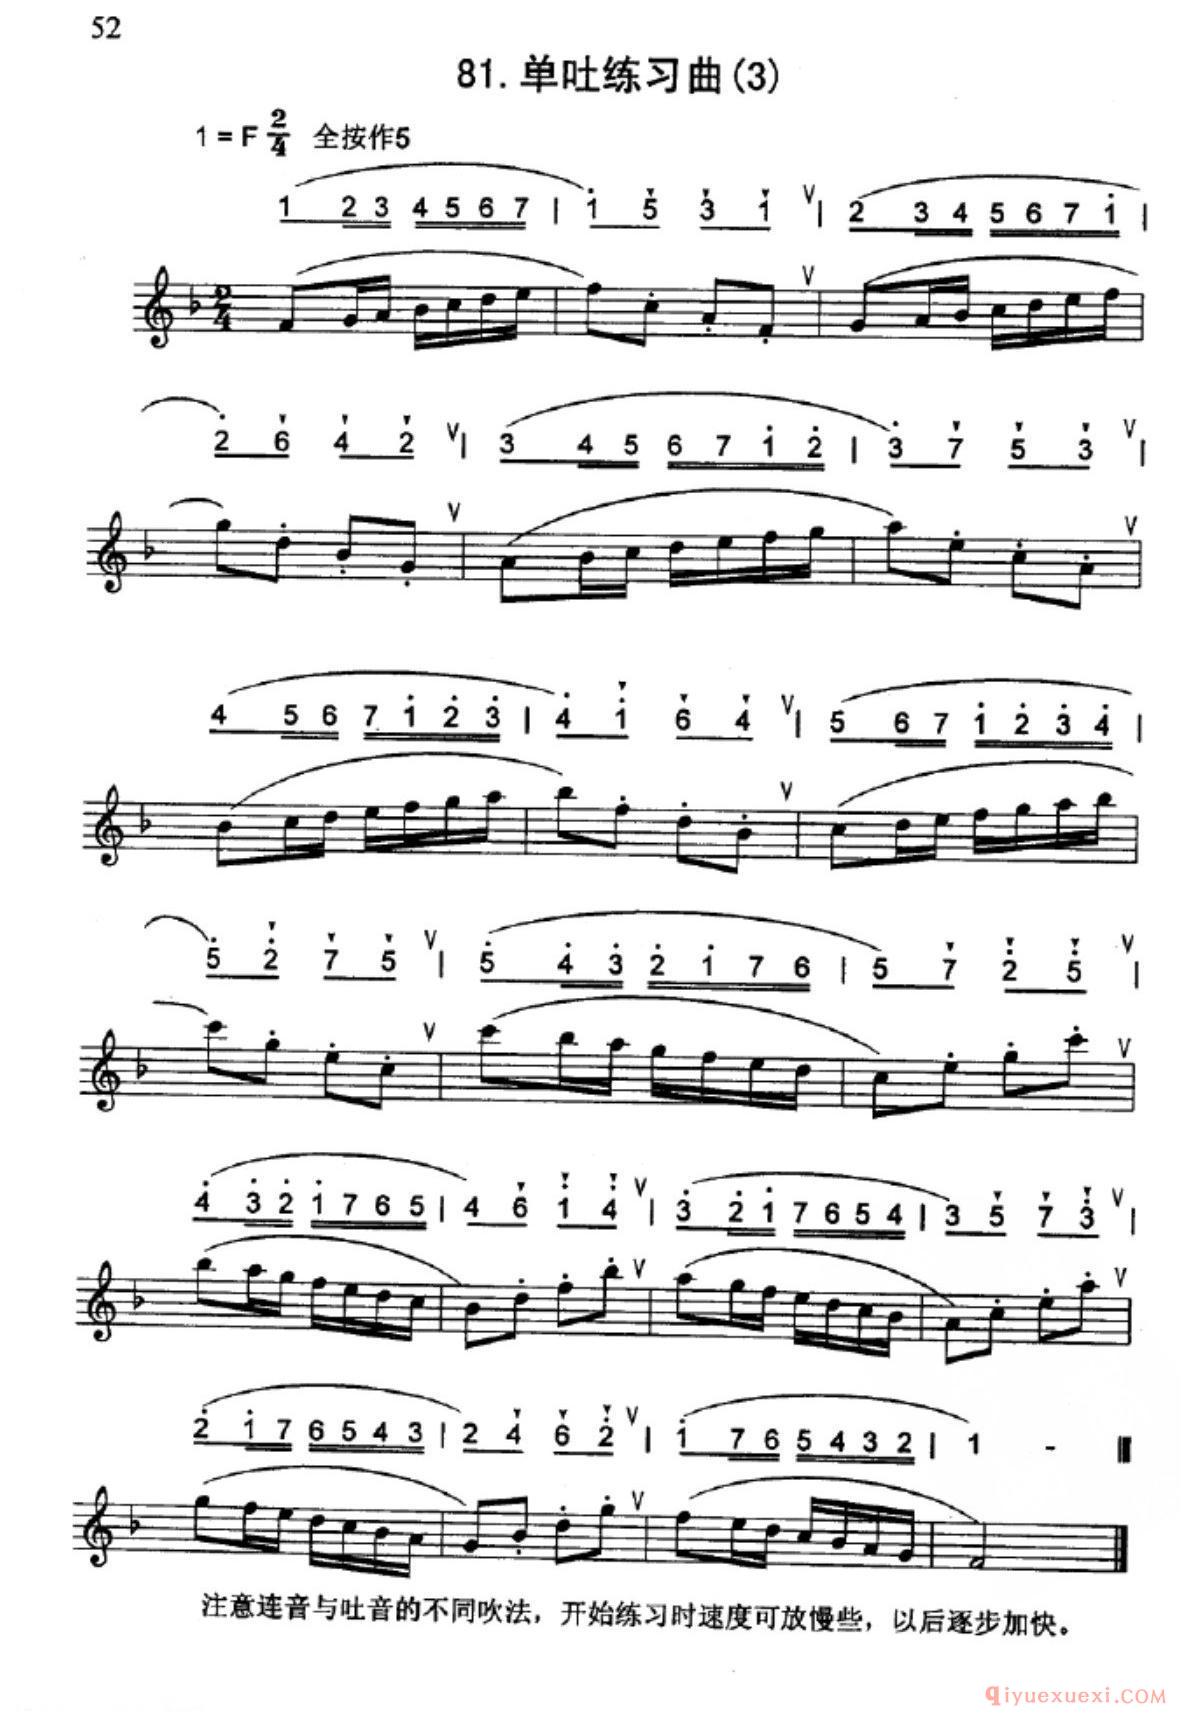 竖笛吐音的练习曲_五线谱与简谱对照